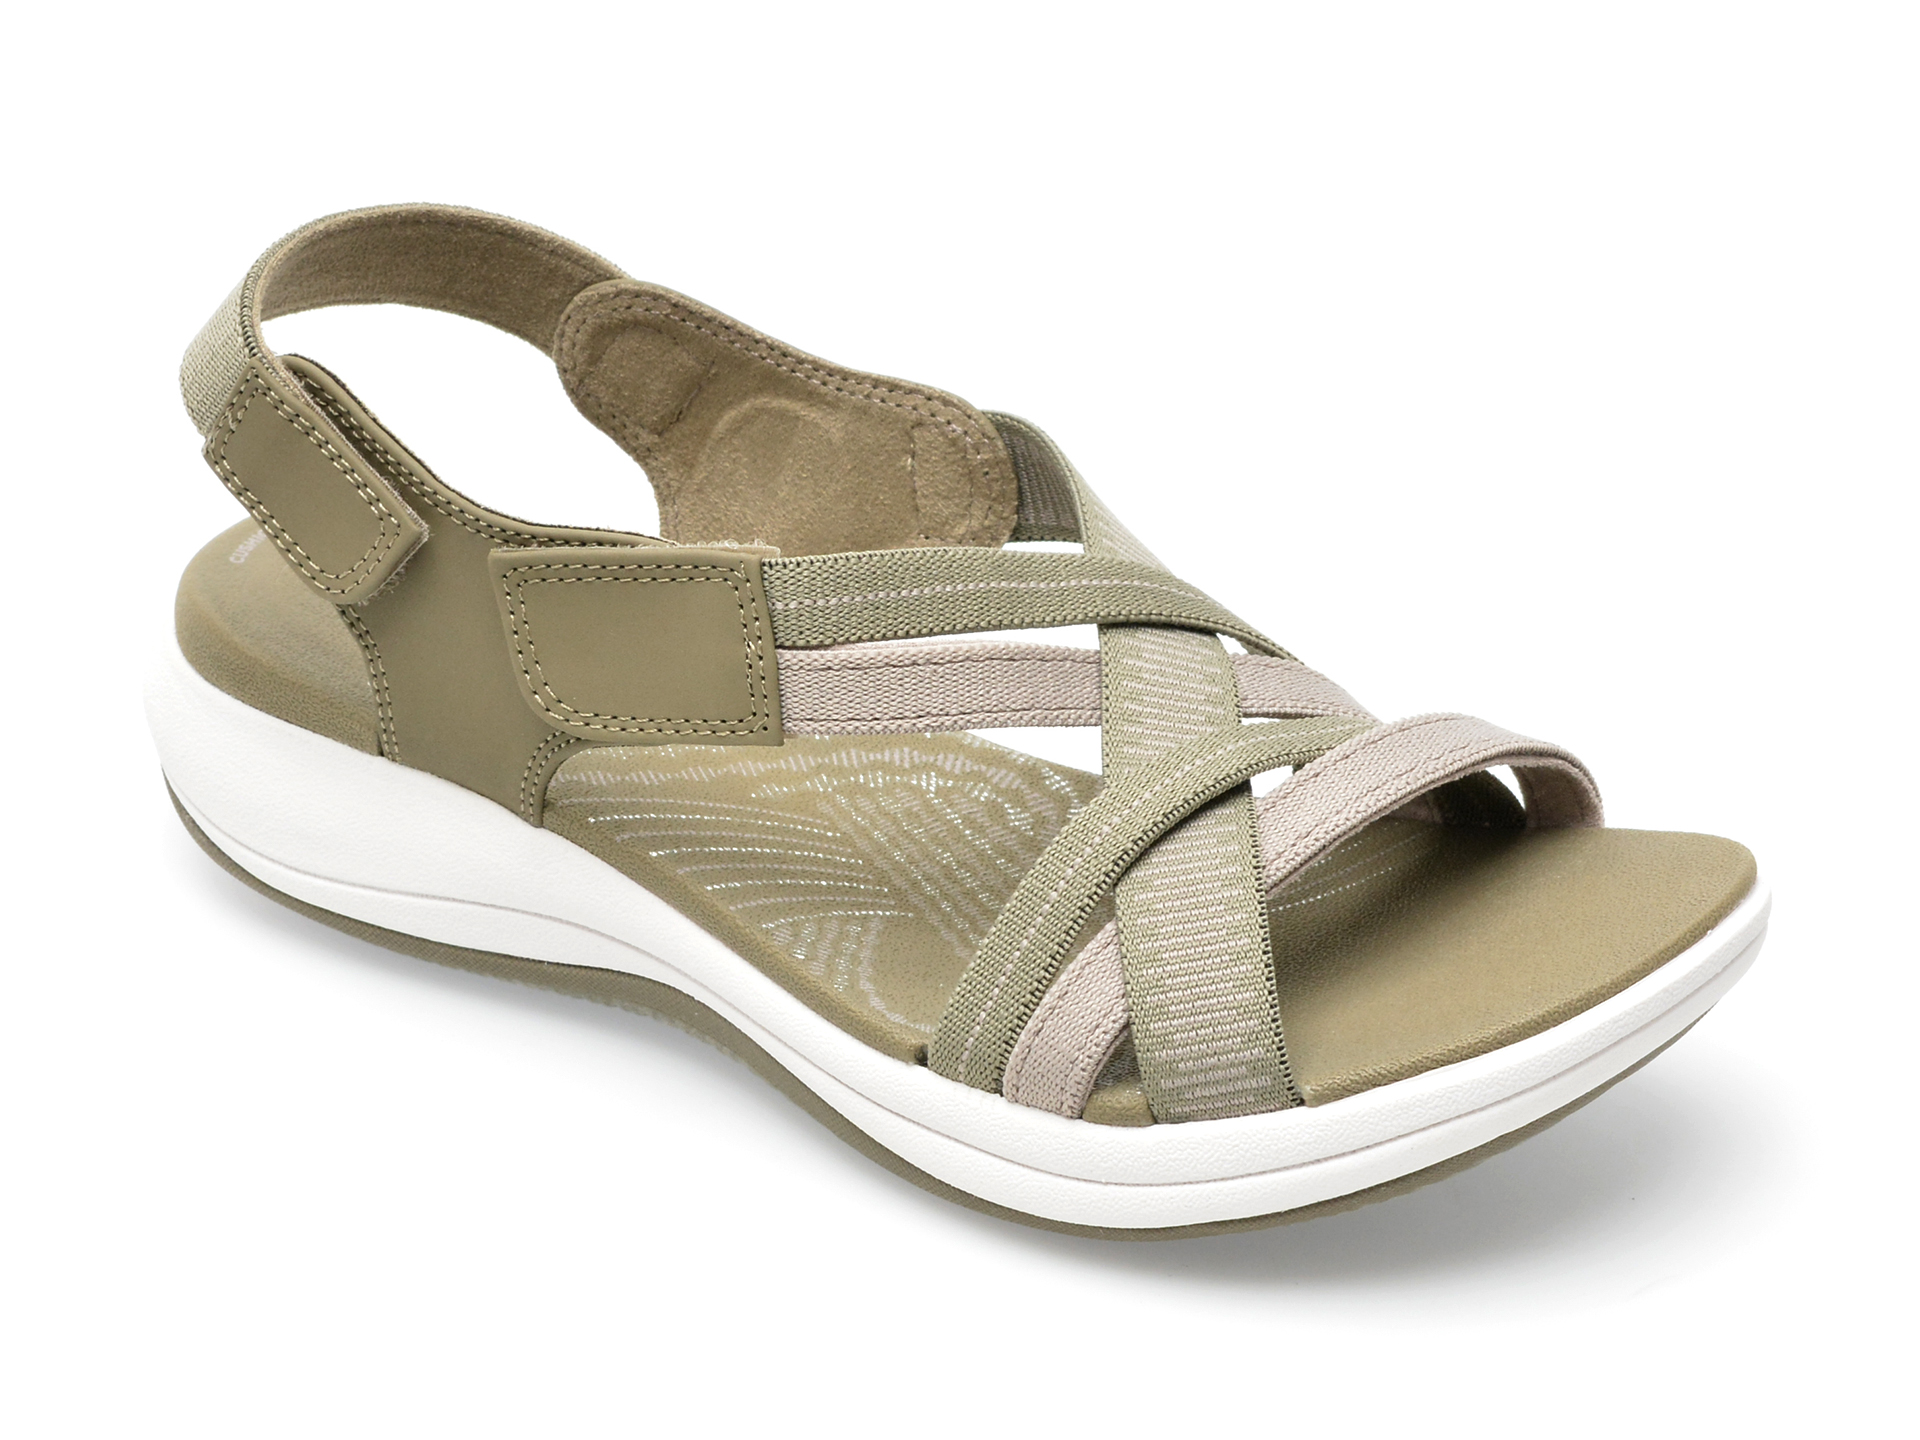 Sandale CLARKS kaki, MIRA IVY 0912, din material textil /femei/sandale